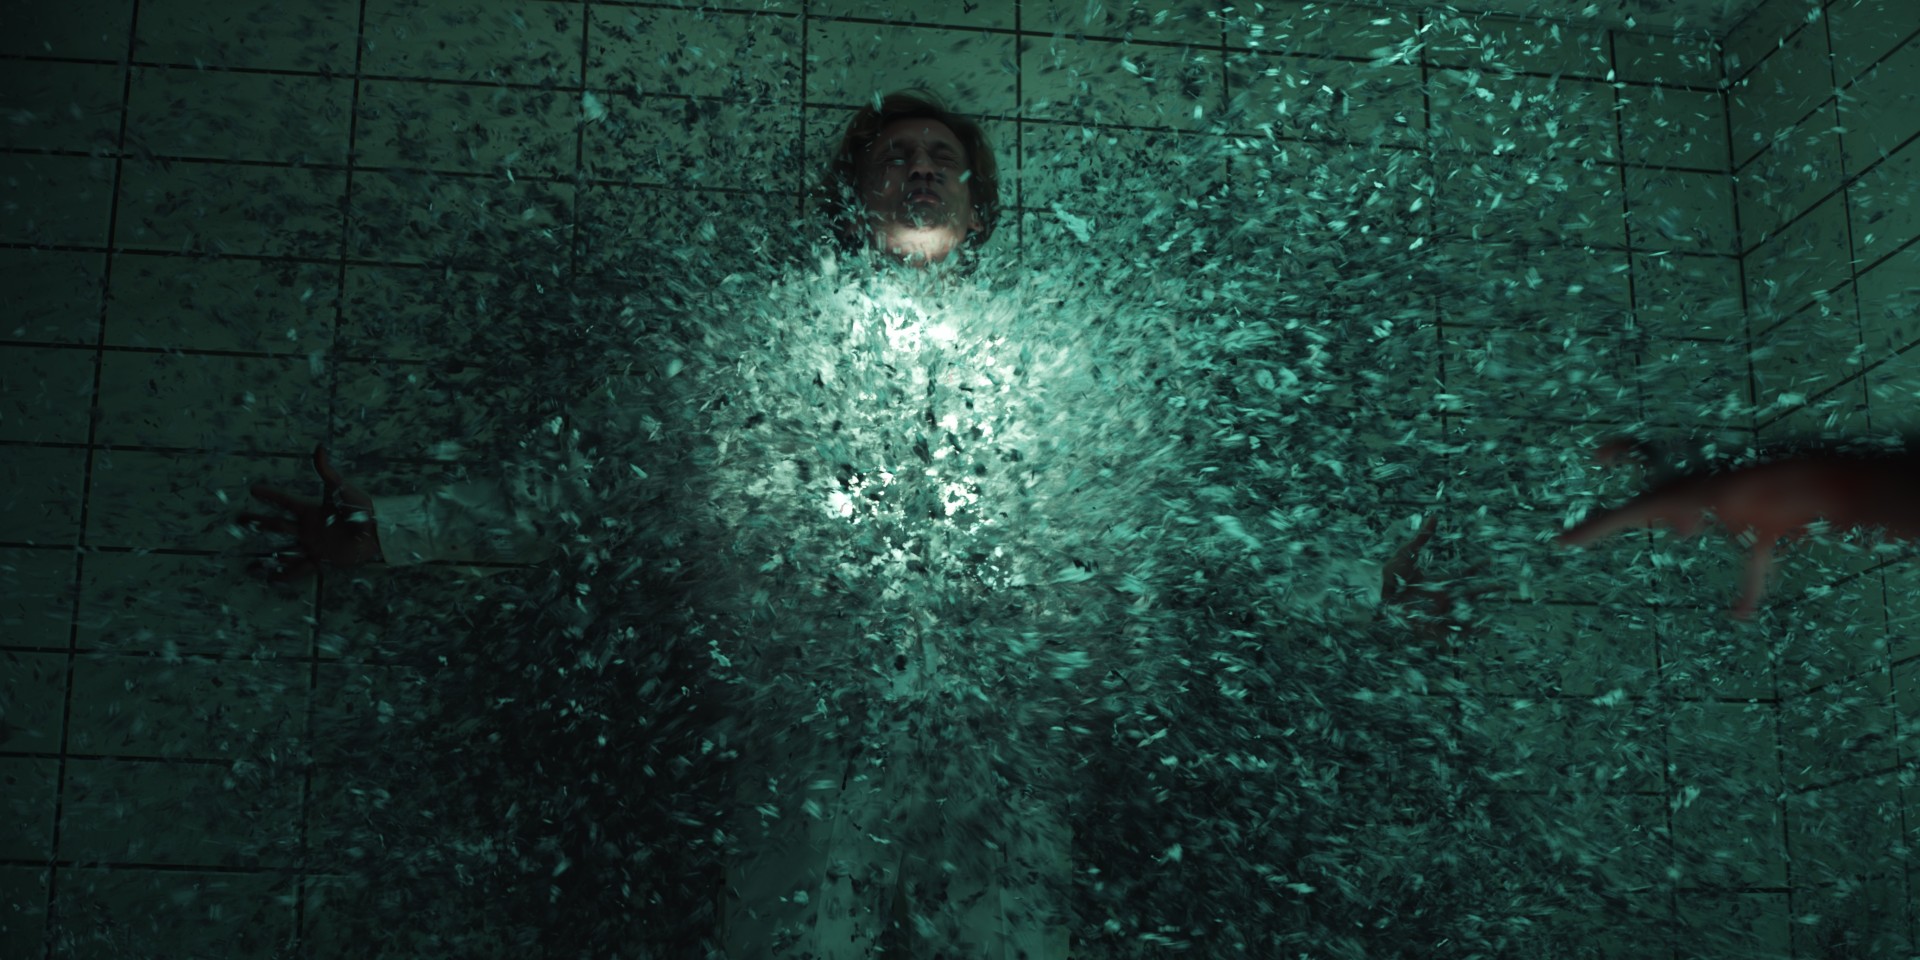 Uma fenda se forma no meio de um personagem que está encostado na parede em uma cena de Stranger Things.